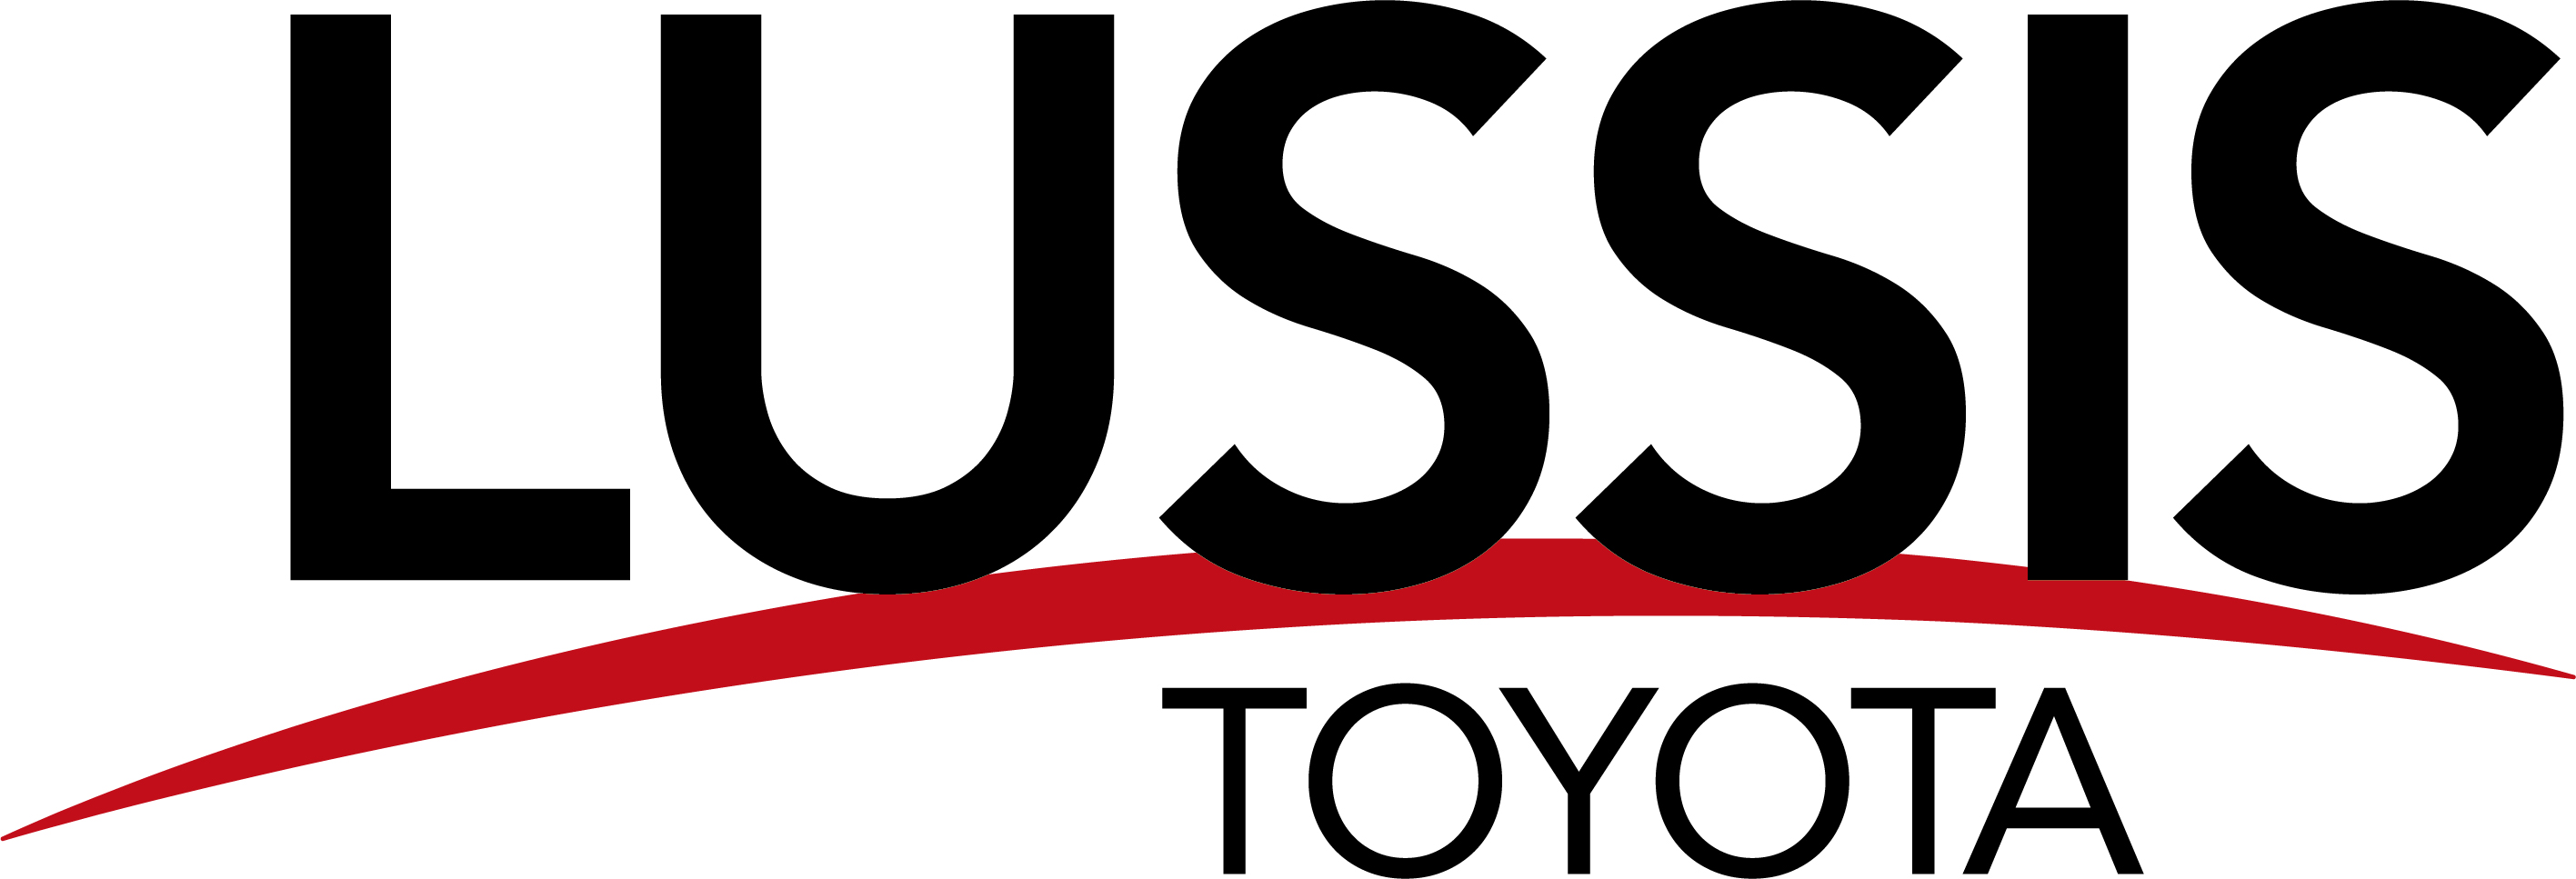 étiquettes personnalisées Toyota